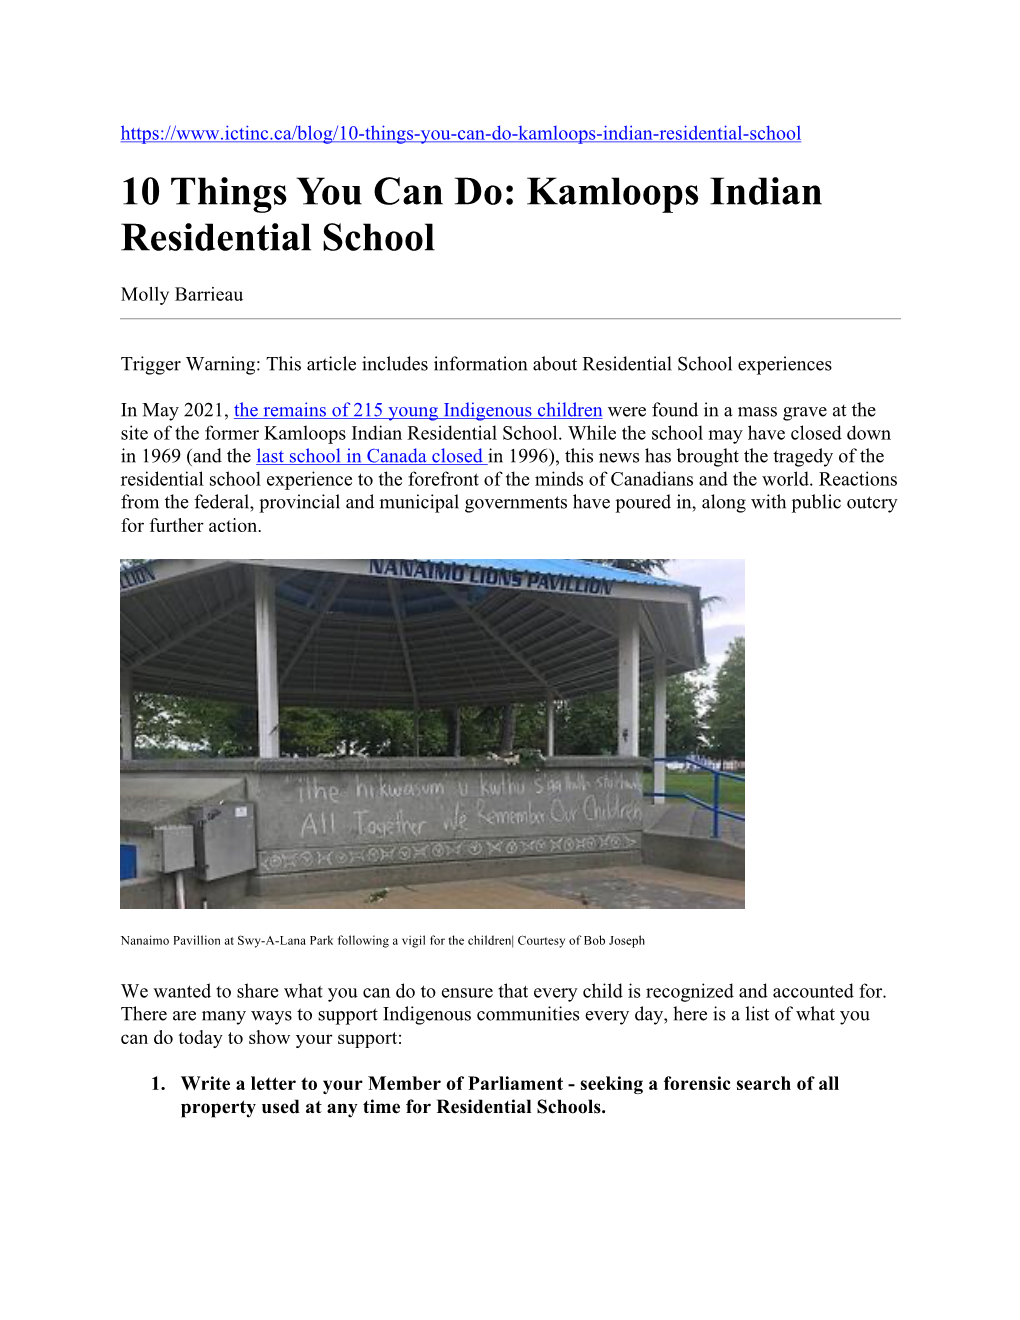 Kamloops Indian Residential School